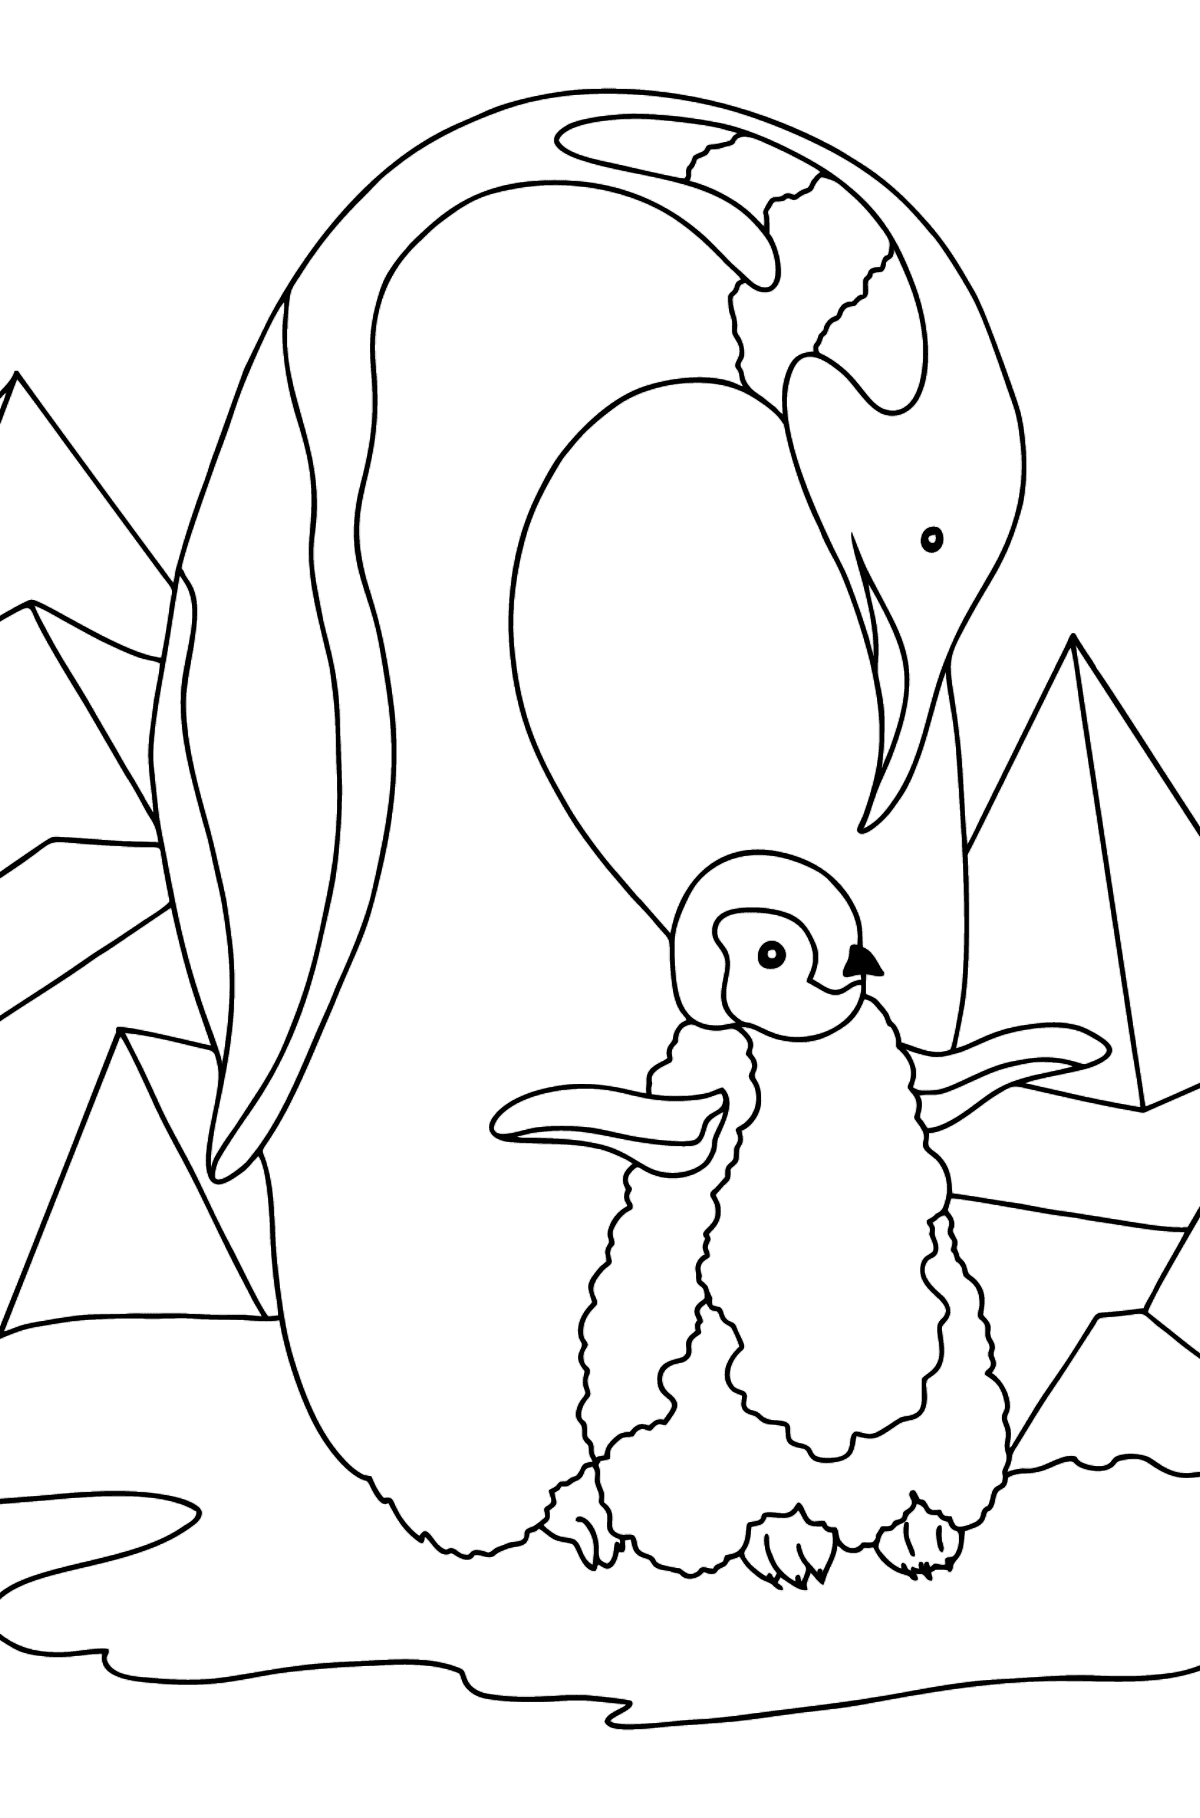 Coloriage - Un pingouin avec un poussin de pingouin - Coloriages pour les Enfants